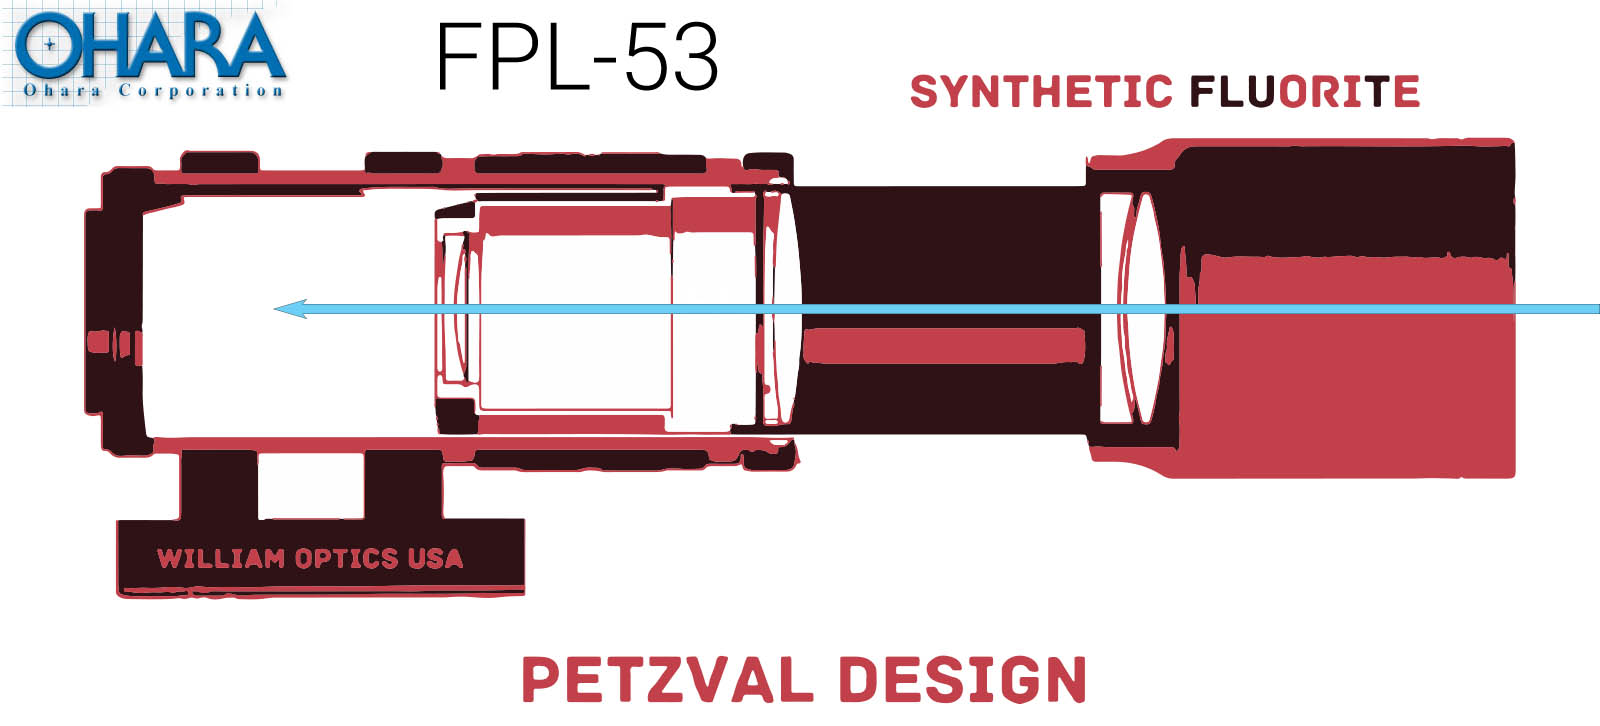 William Optics Patzval Design